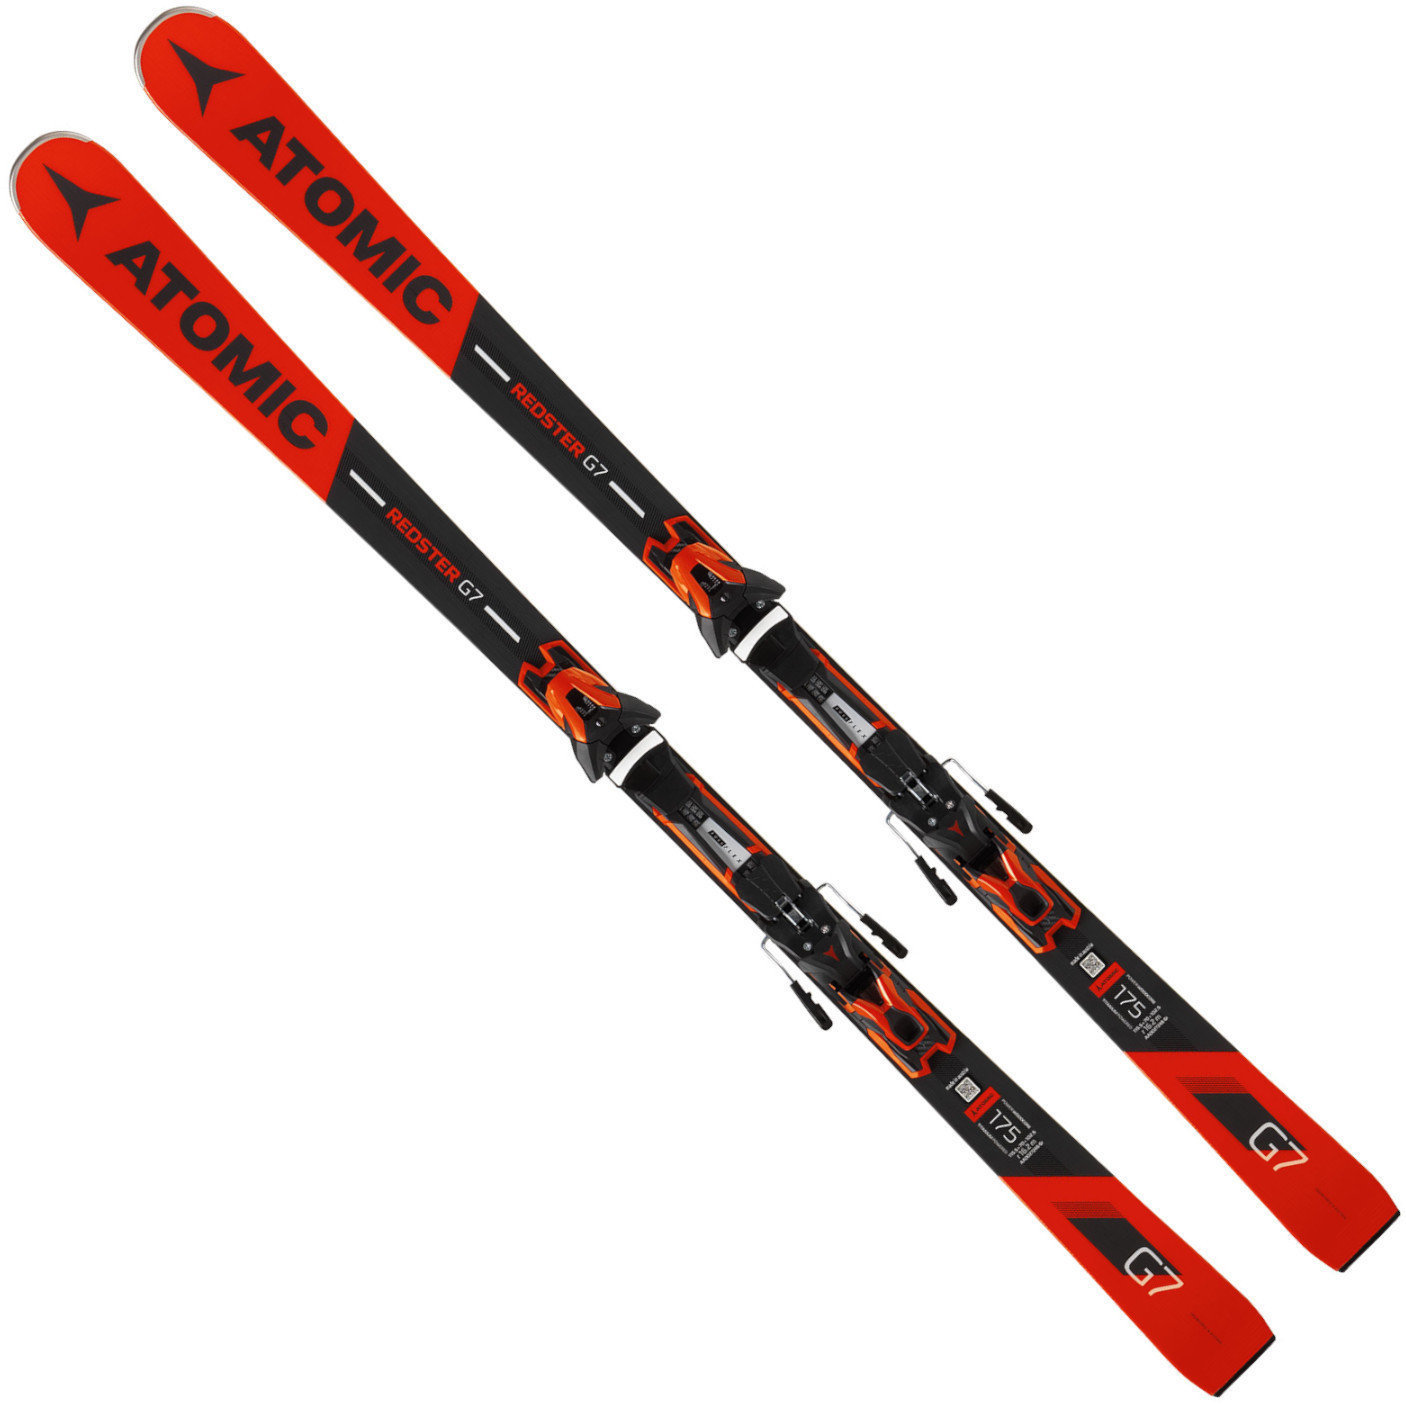 Lyže Atomic Redster G7 + FT 12 GW 175 18/19 skis